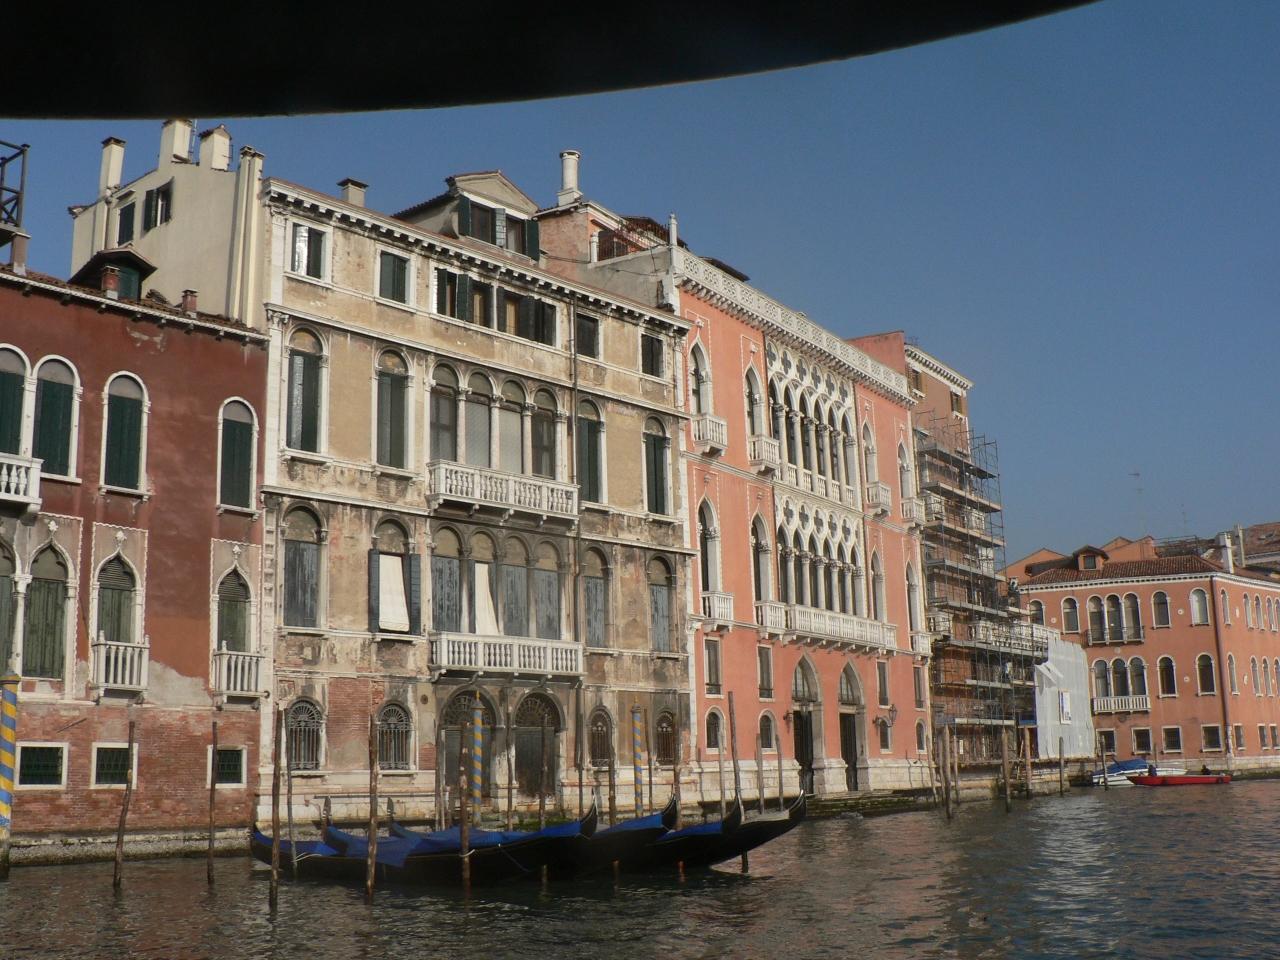 『ヴェネツィア（2） カナル・グランデ（大運河）と貴族・商人の館』ベネチア(イタリア)の旅行記・ブログ by 真@tokyoさん【フォートラベル】